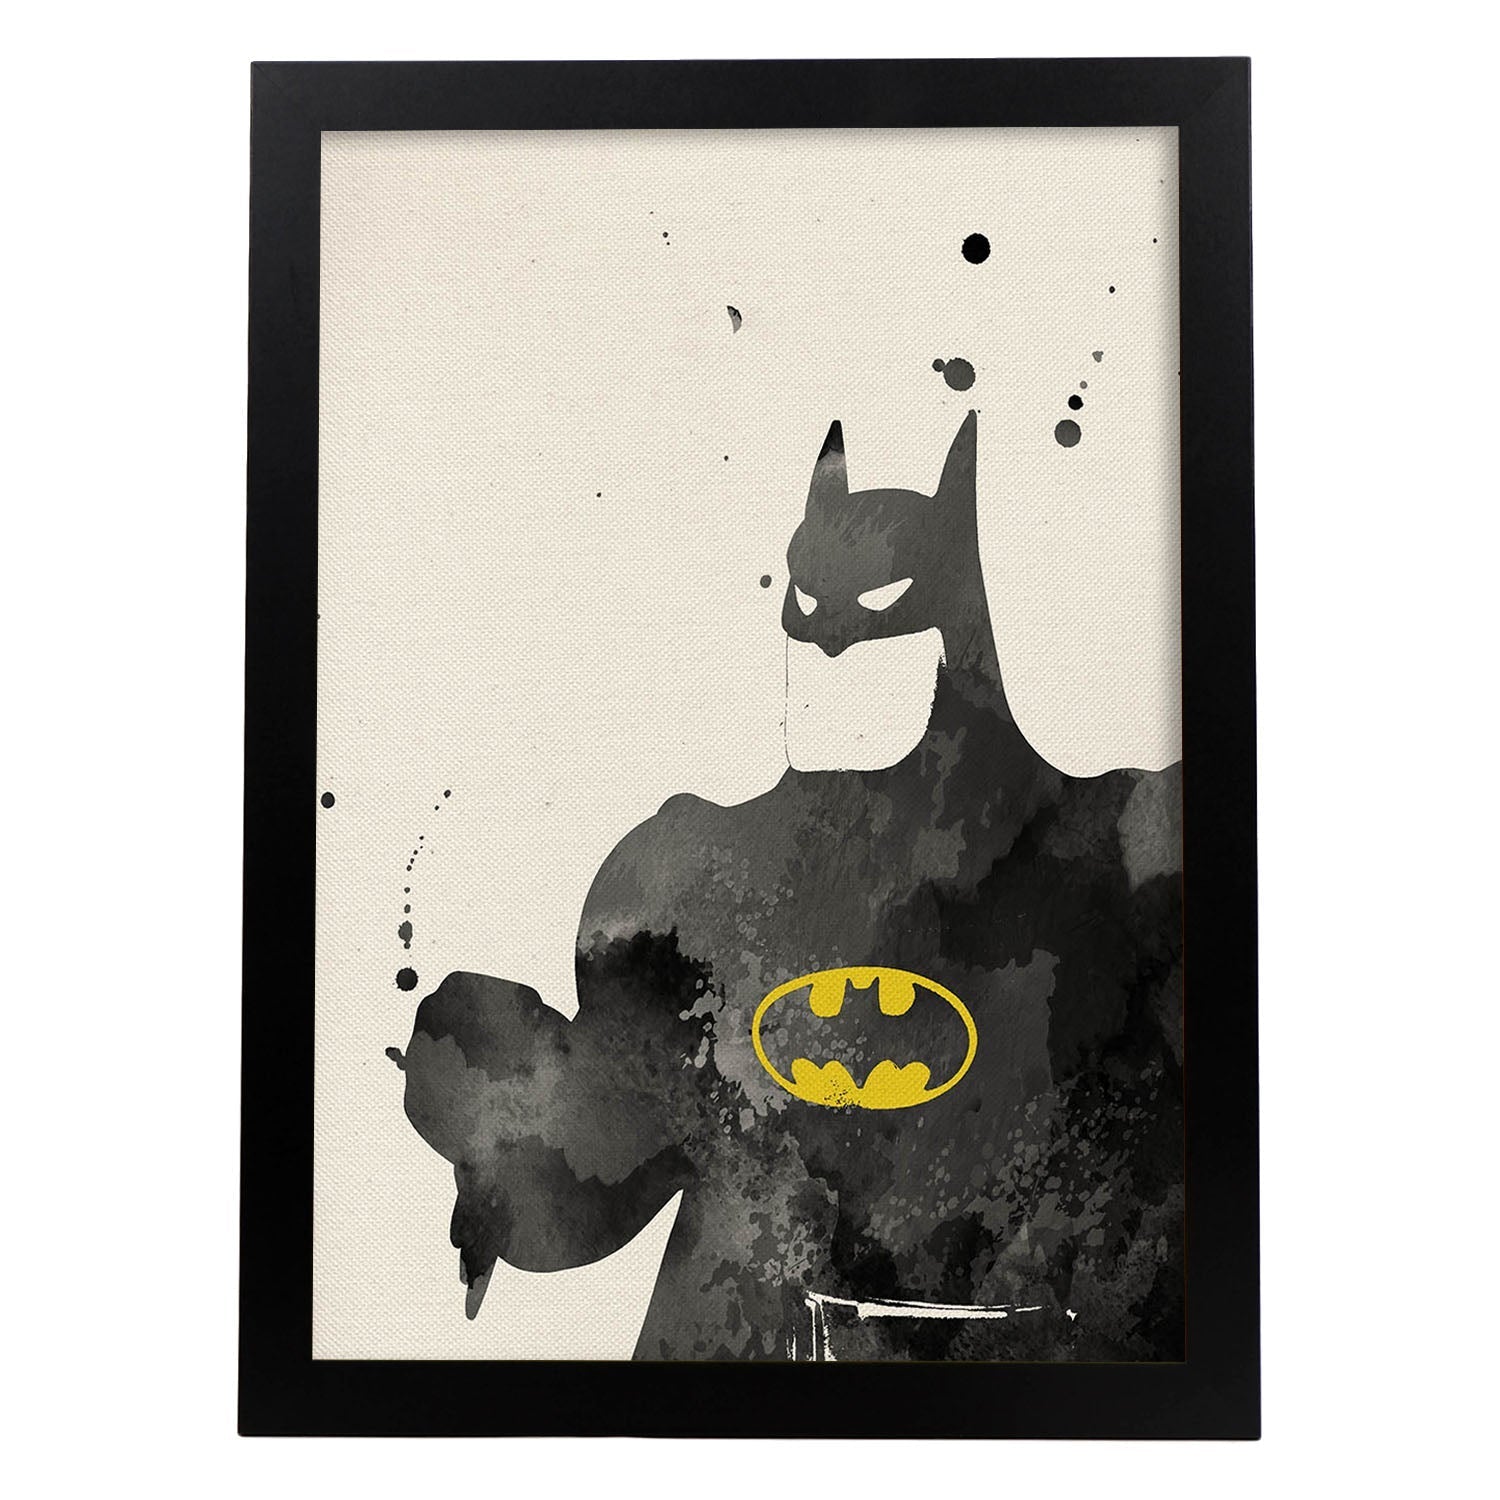 Poster de Batman 2. Láminas de cine, películas, y actores. Posters de películas antiguas con estilo acuarela.-Artwork-Nacnic-A3-Marco Negro-Nacnic Estudio SL